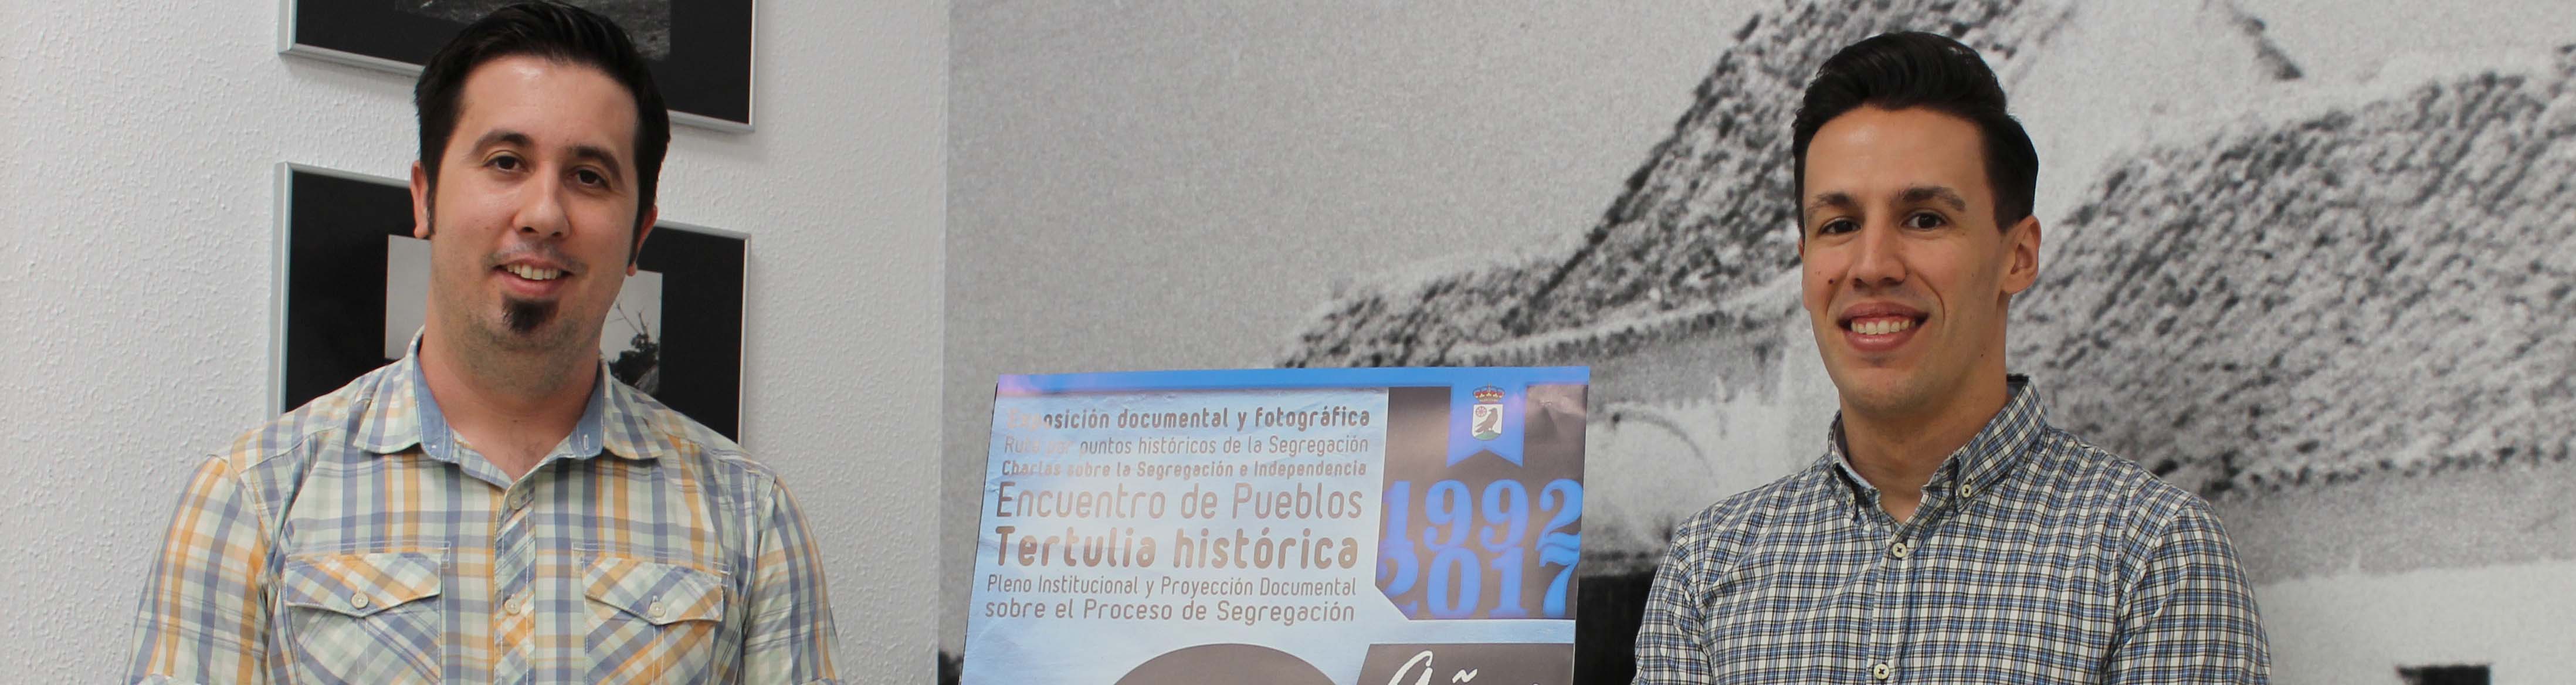 Antonio Amarillo y Jon Bejarano, durante la presentación del cartel del 25 aniversario de la independencia